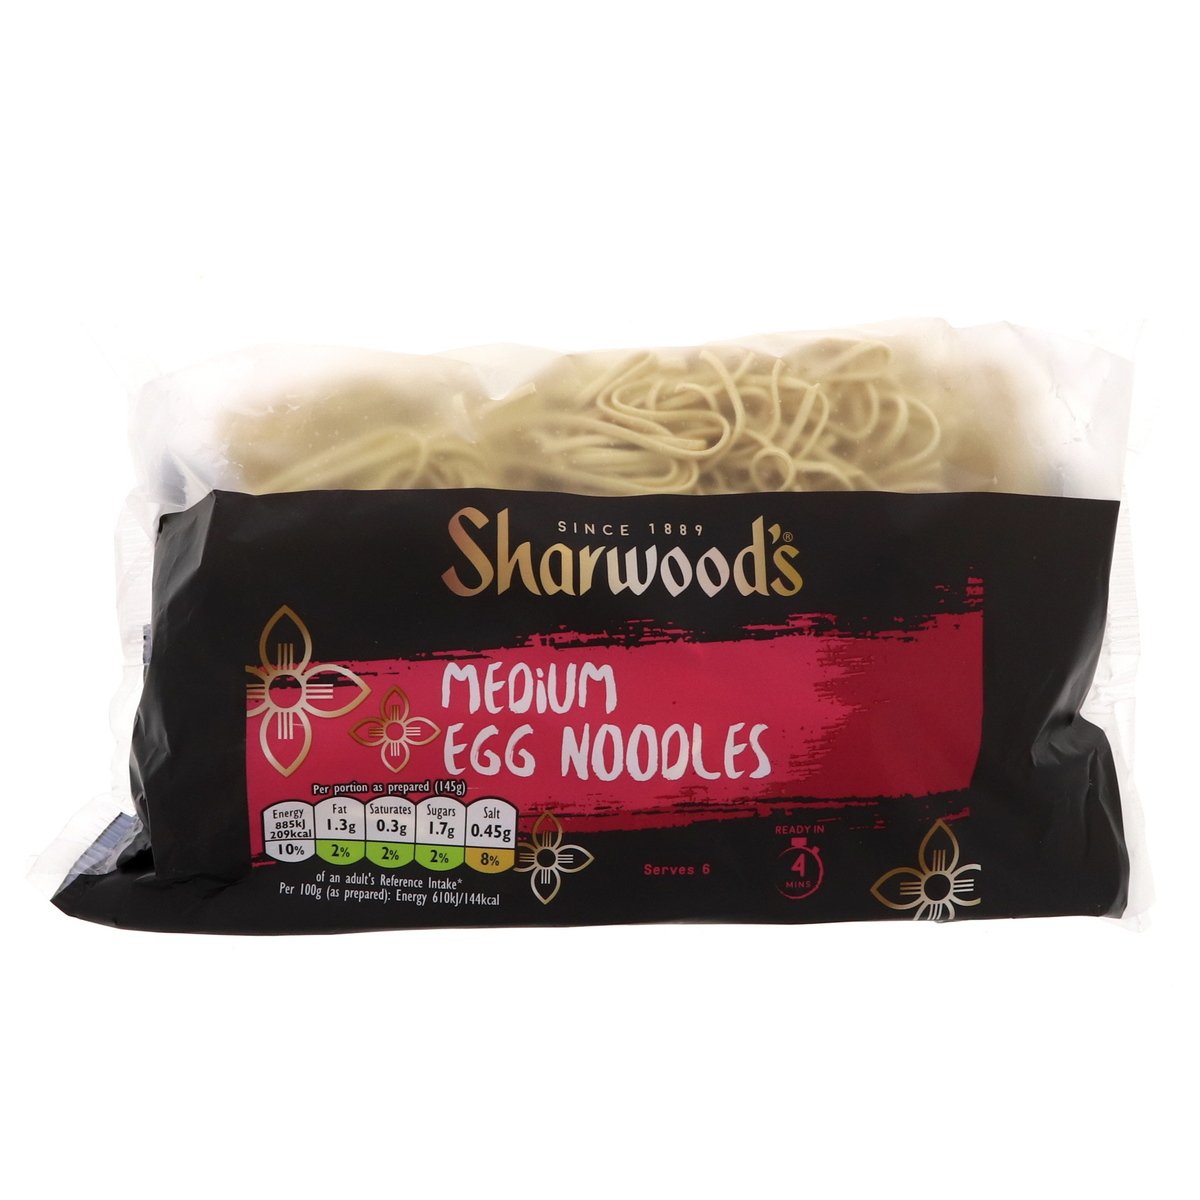 Sharwoods Medium Egg Noodles 340 g